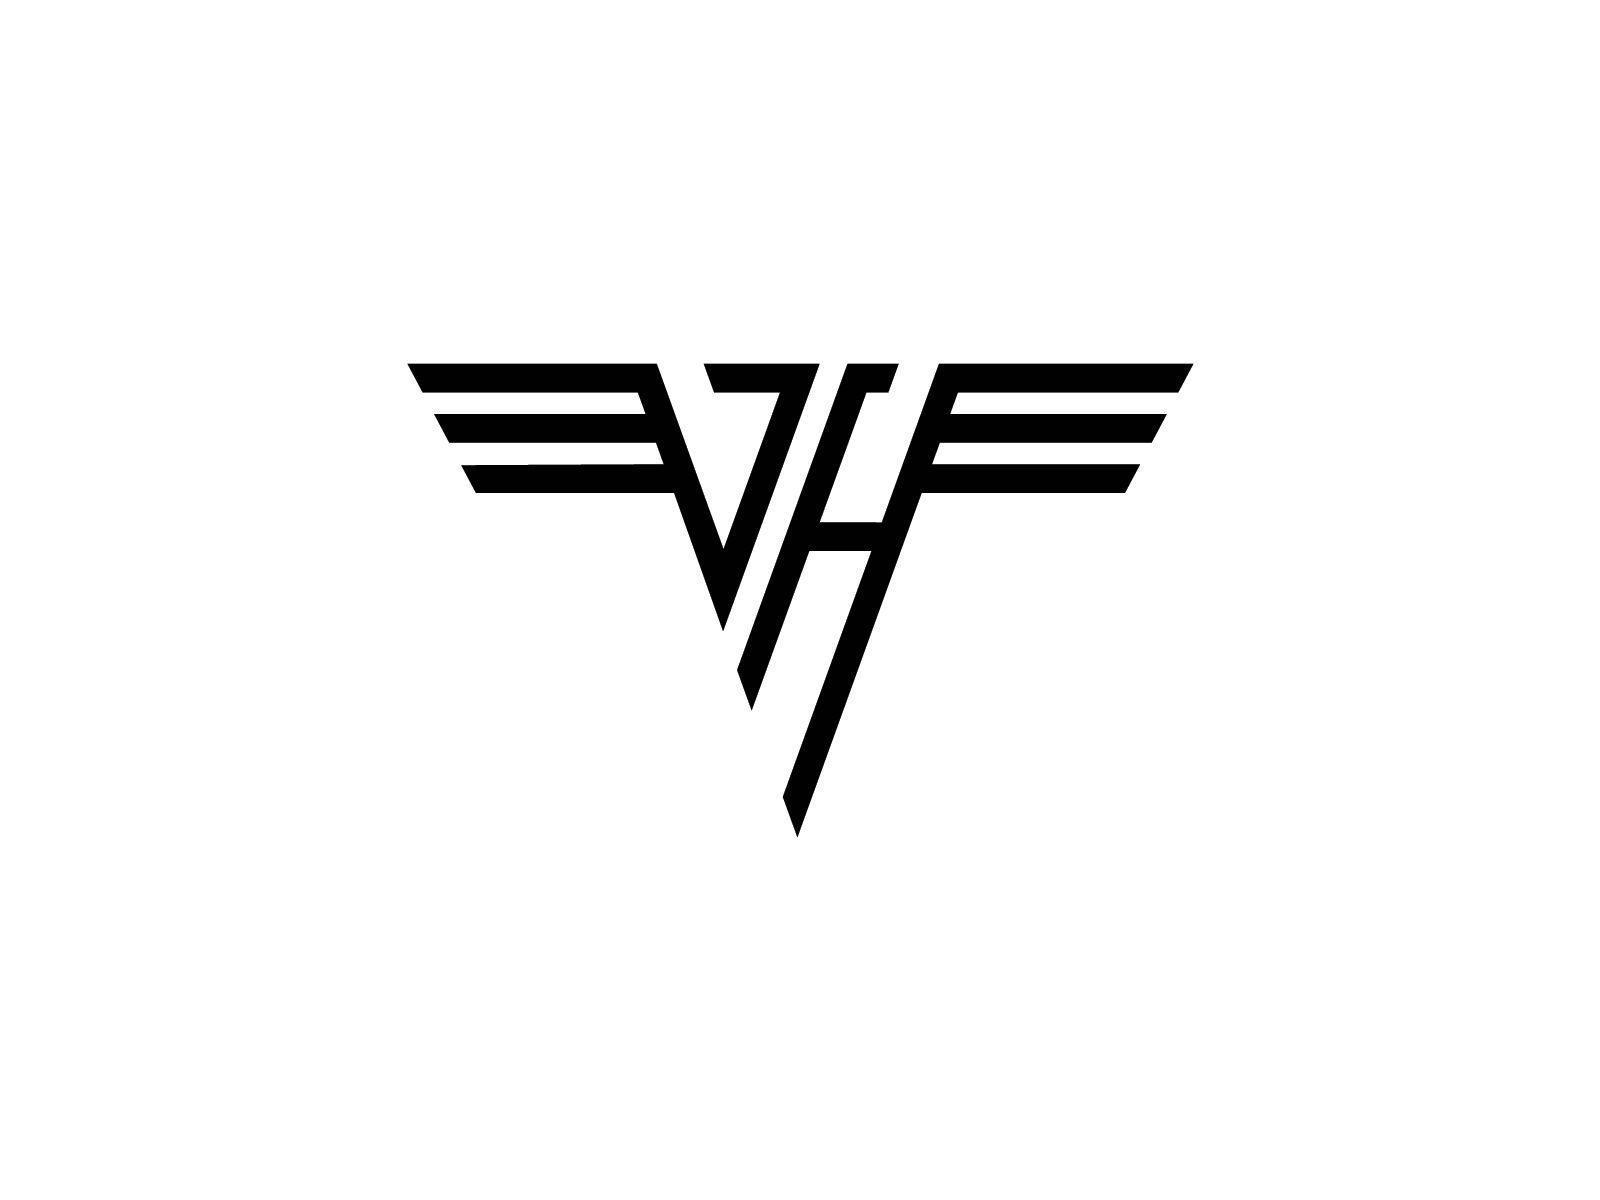 Van Halen logo and wallpaper. Google image and van Halen